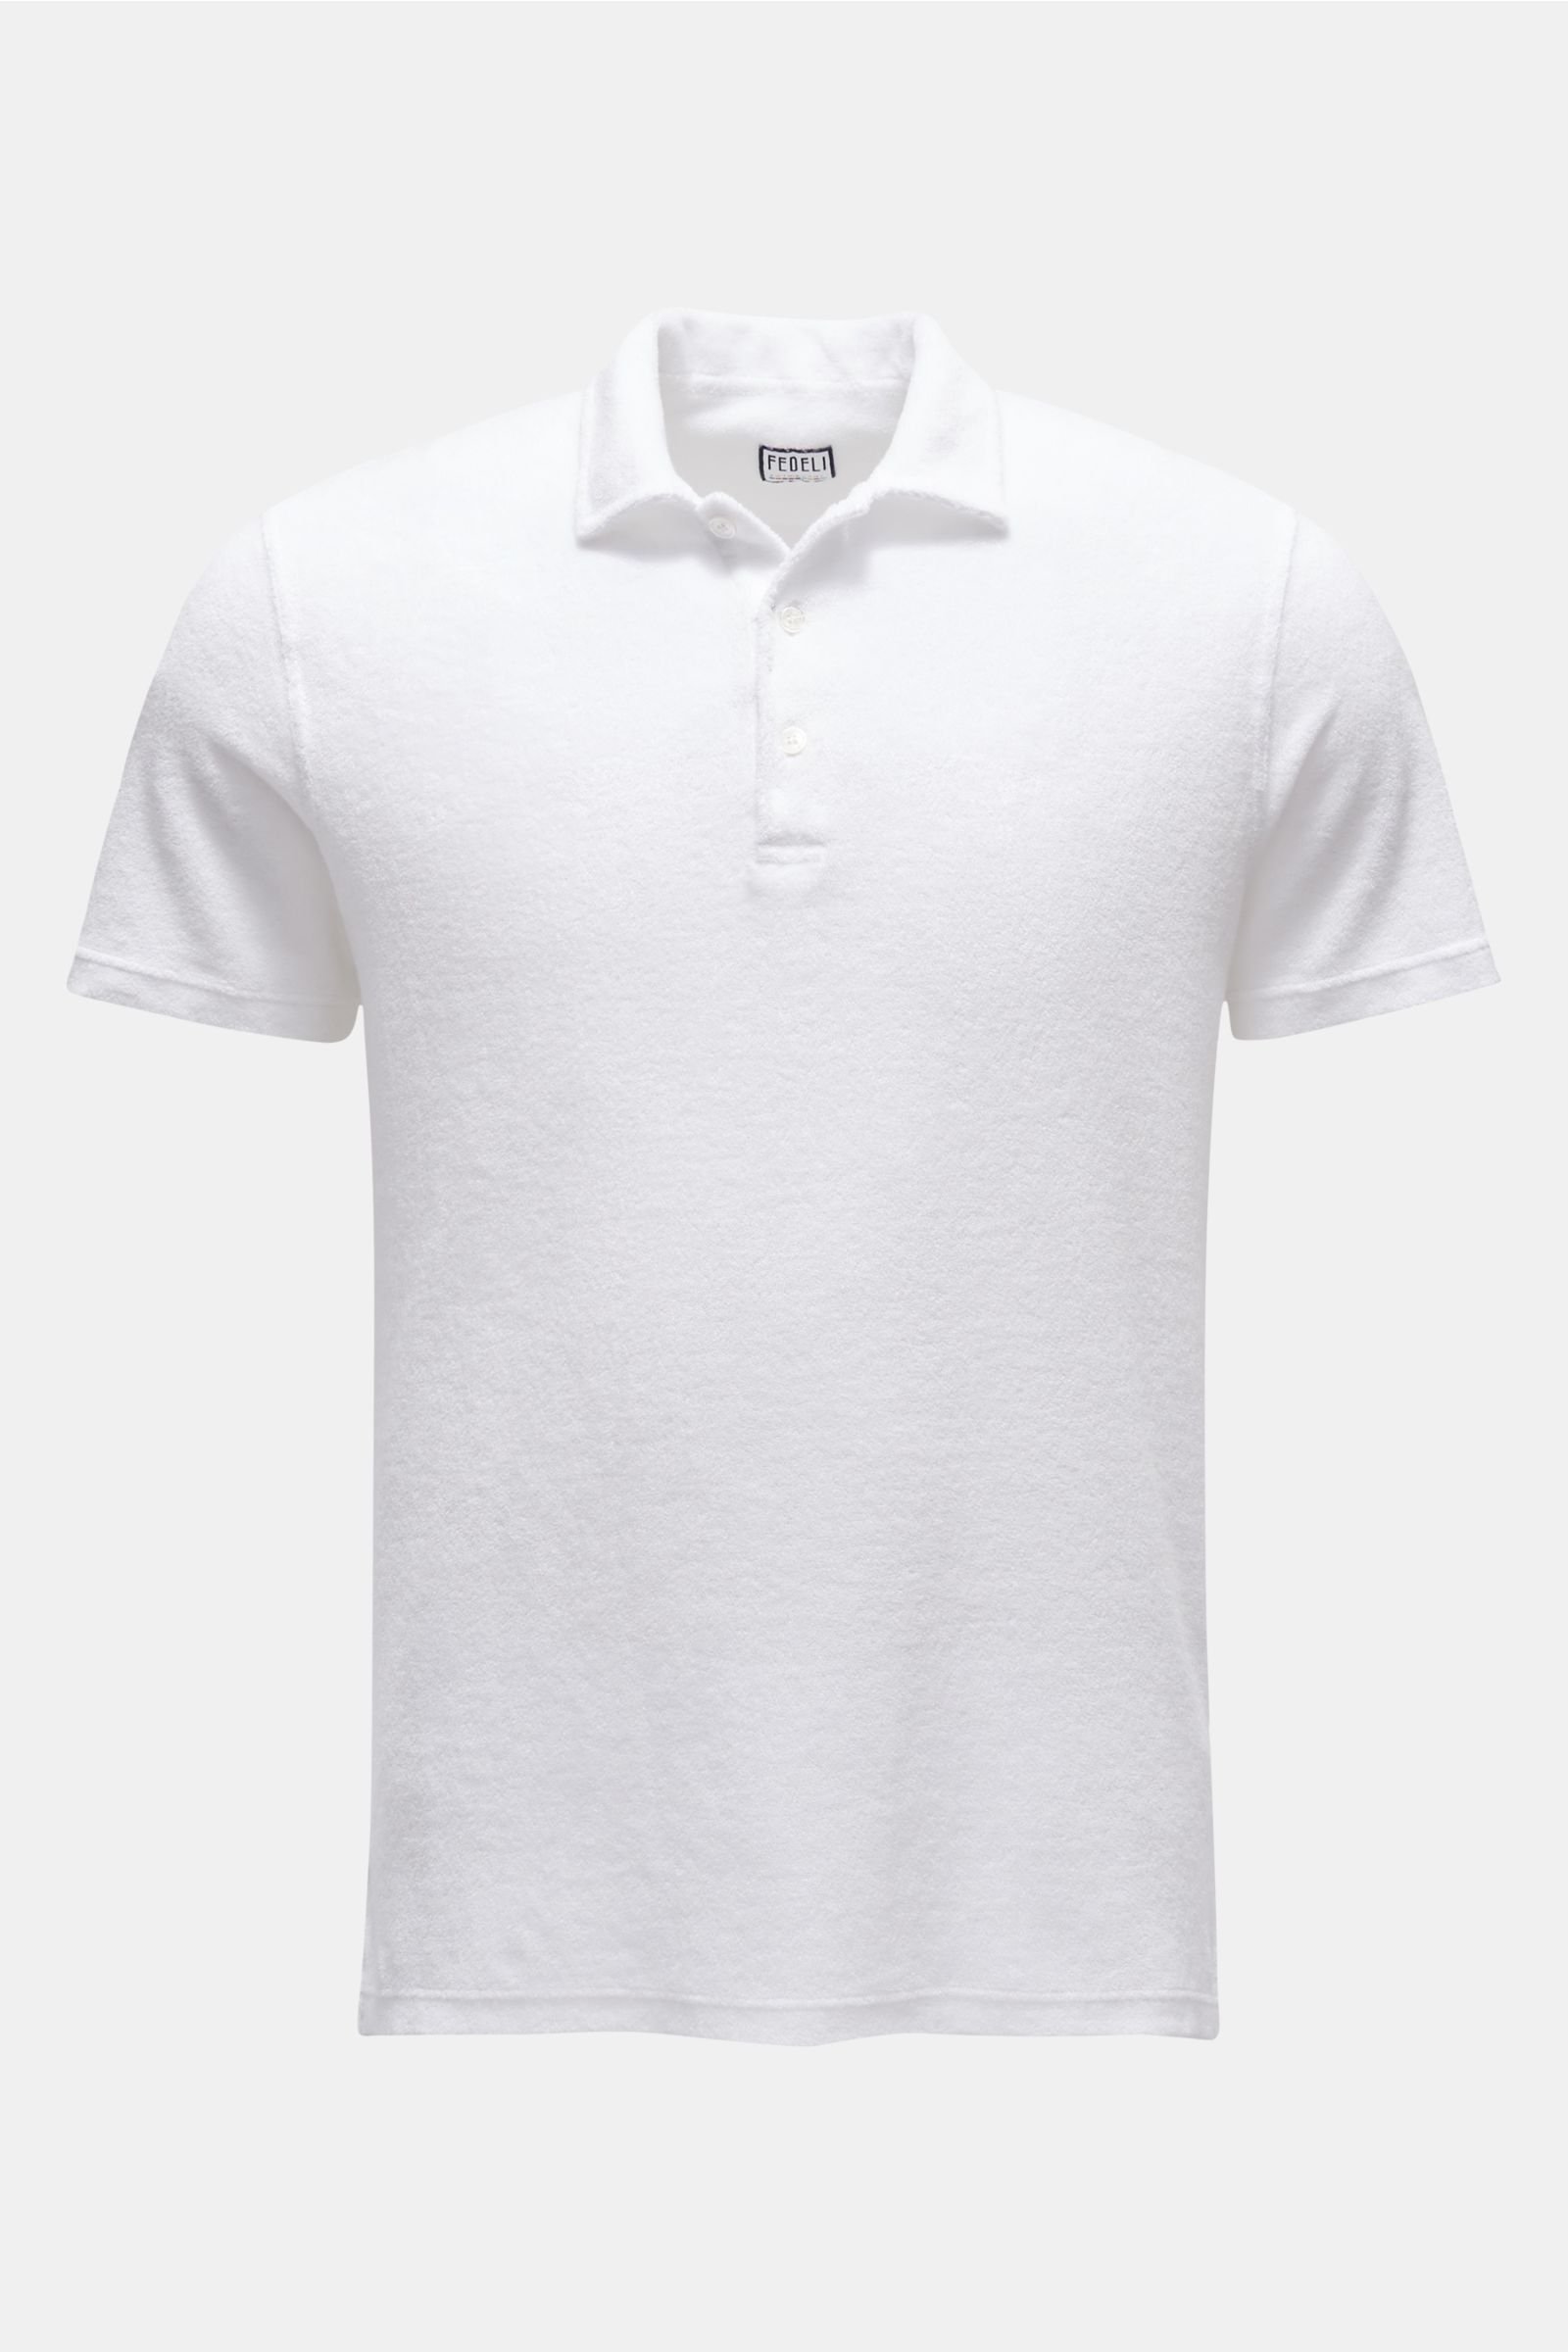 Terry polo shirt ‘Terry Mondial’ white